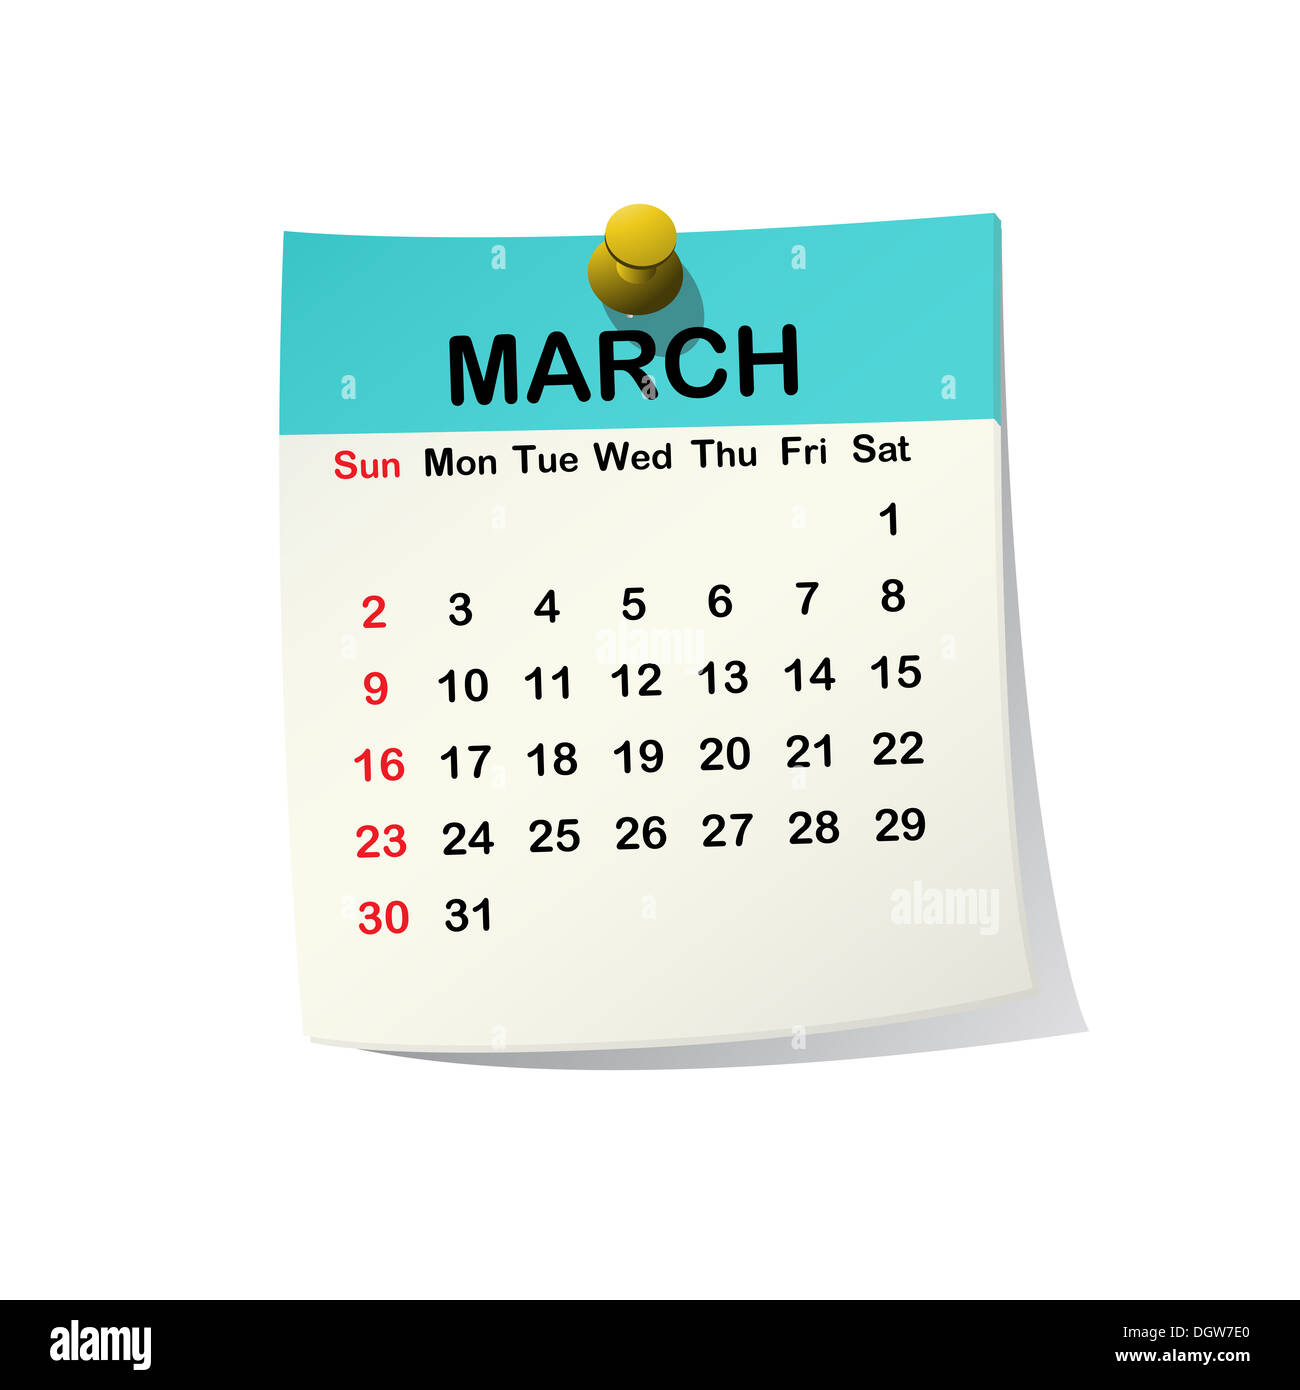 Календарь март 2014 года. Лист календаря март. Календарь март на прозрачном фоне.